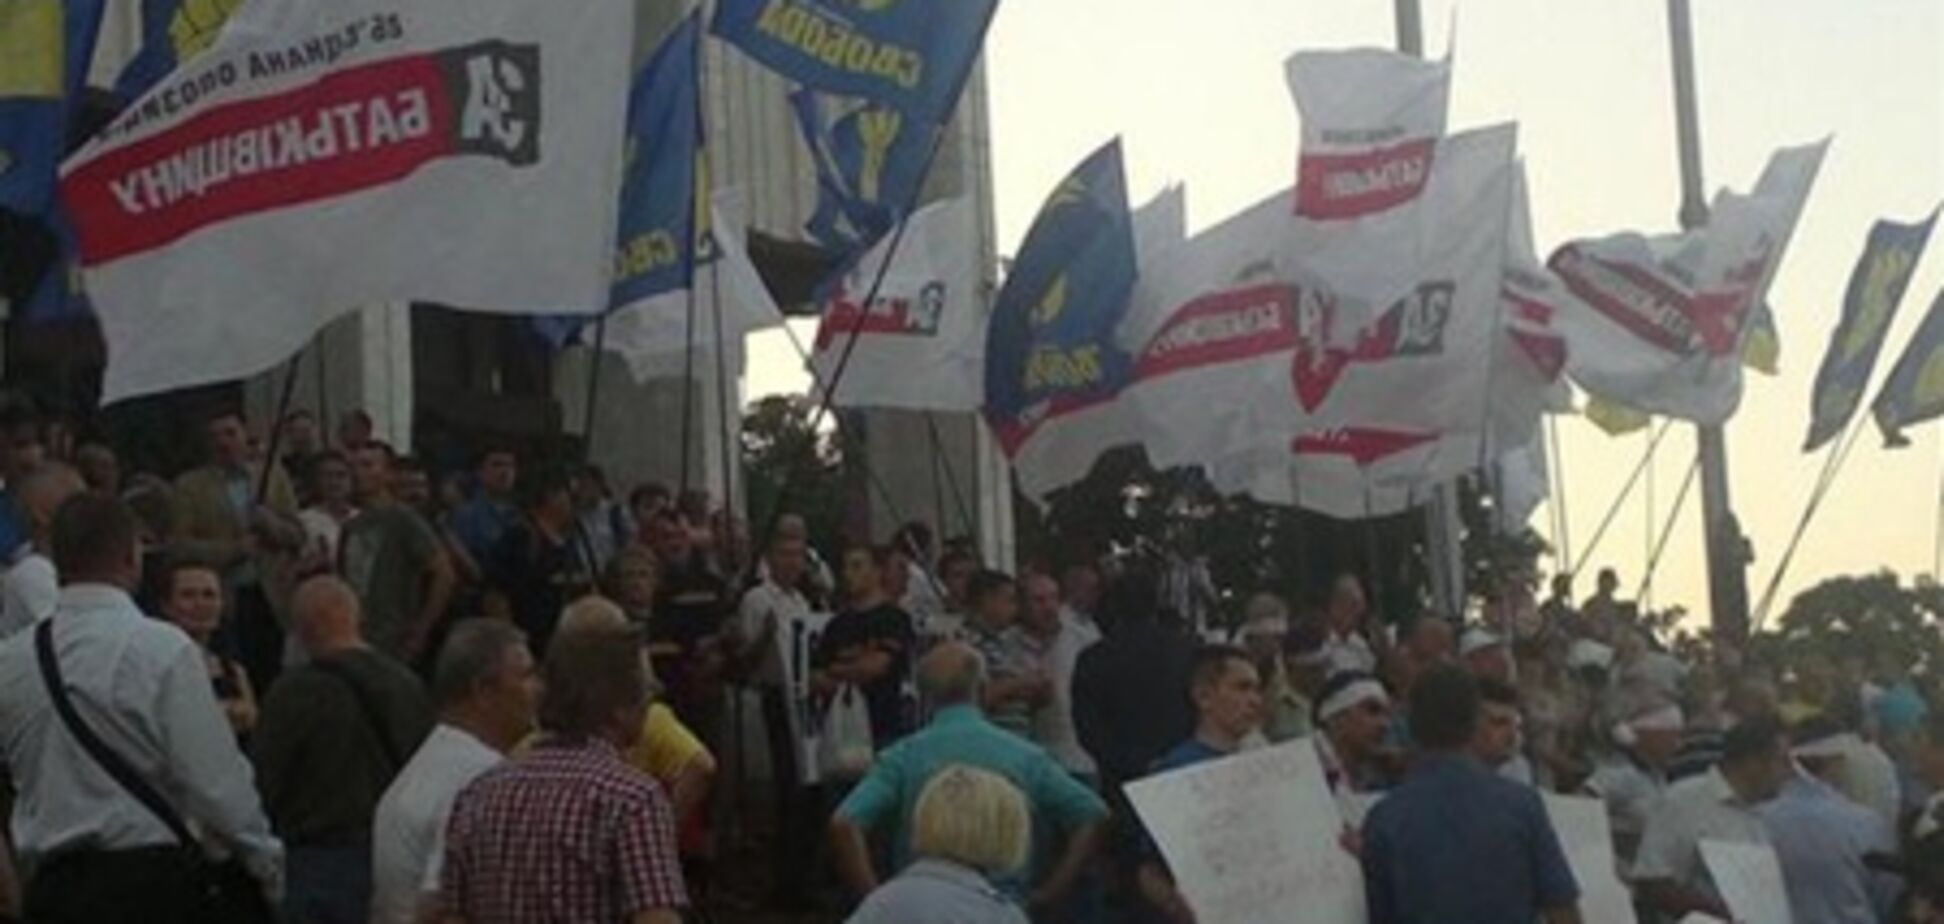 У митингующих под Украинским домом украли флаги